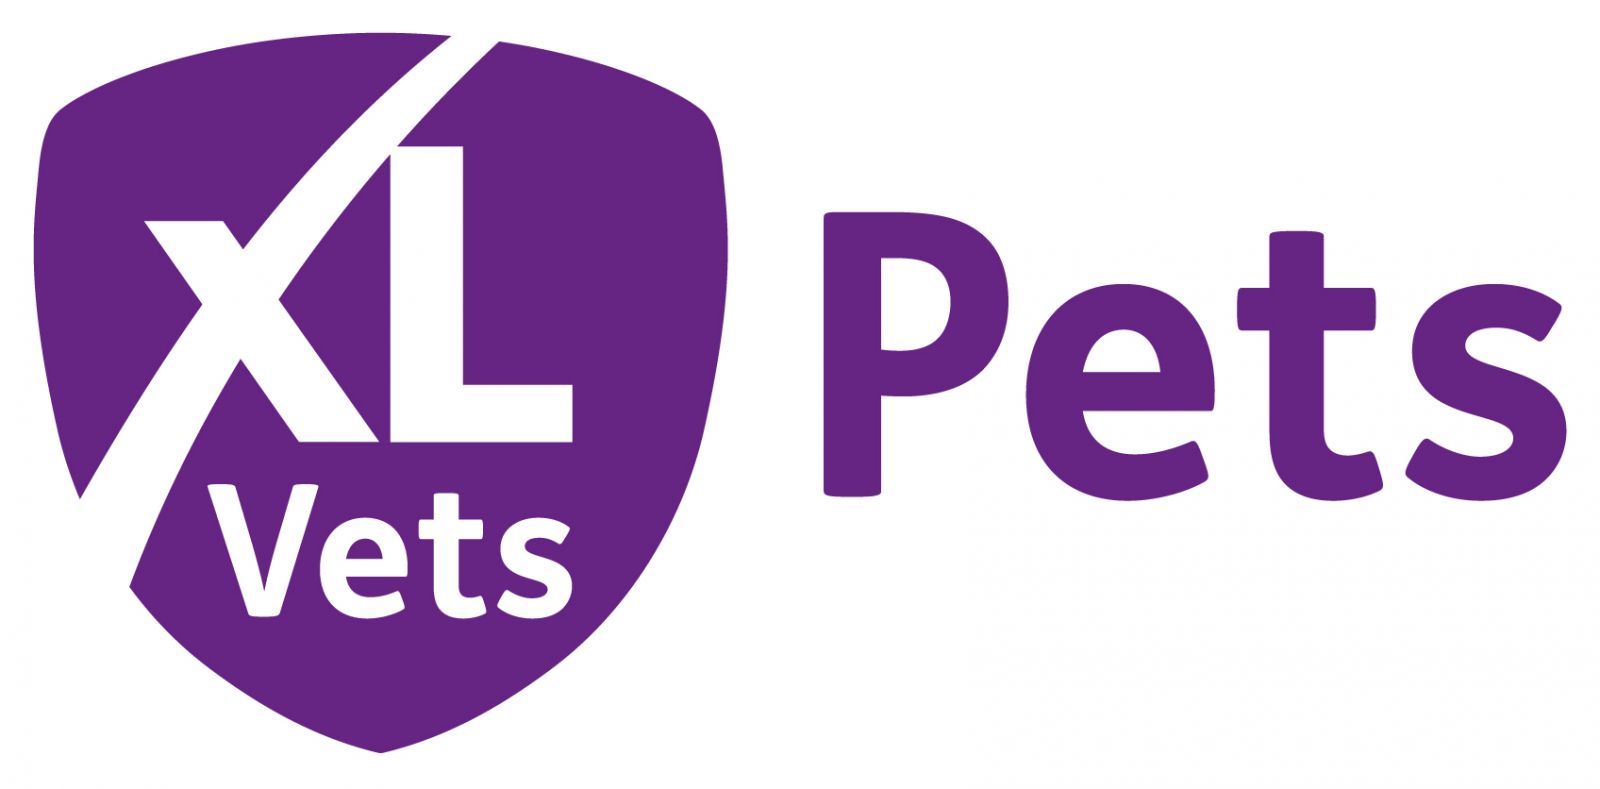 XLVets Pets logo